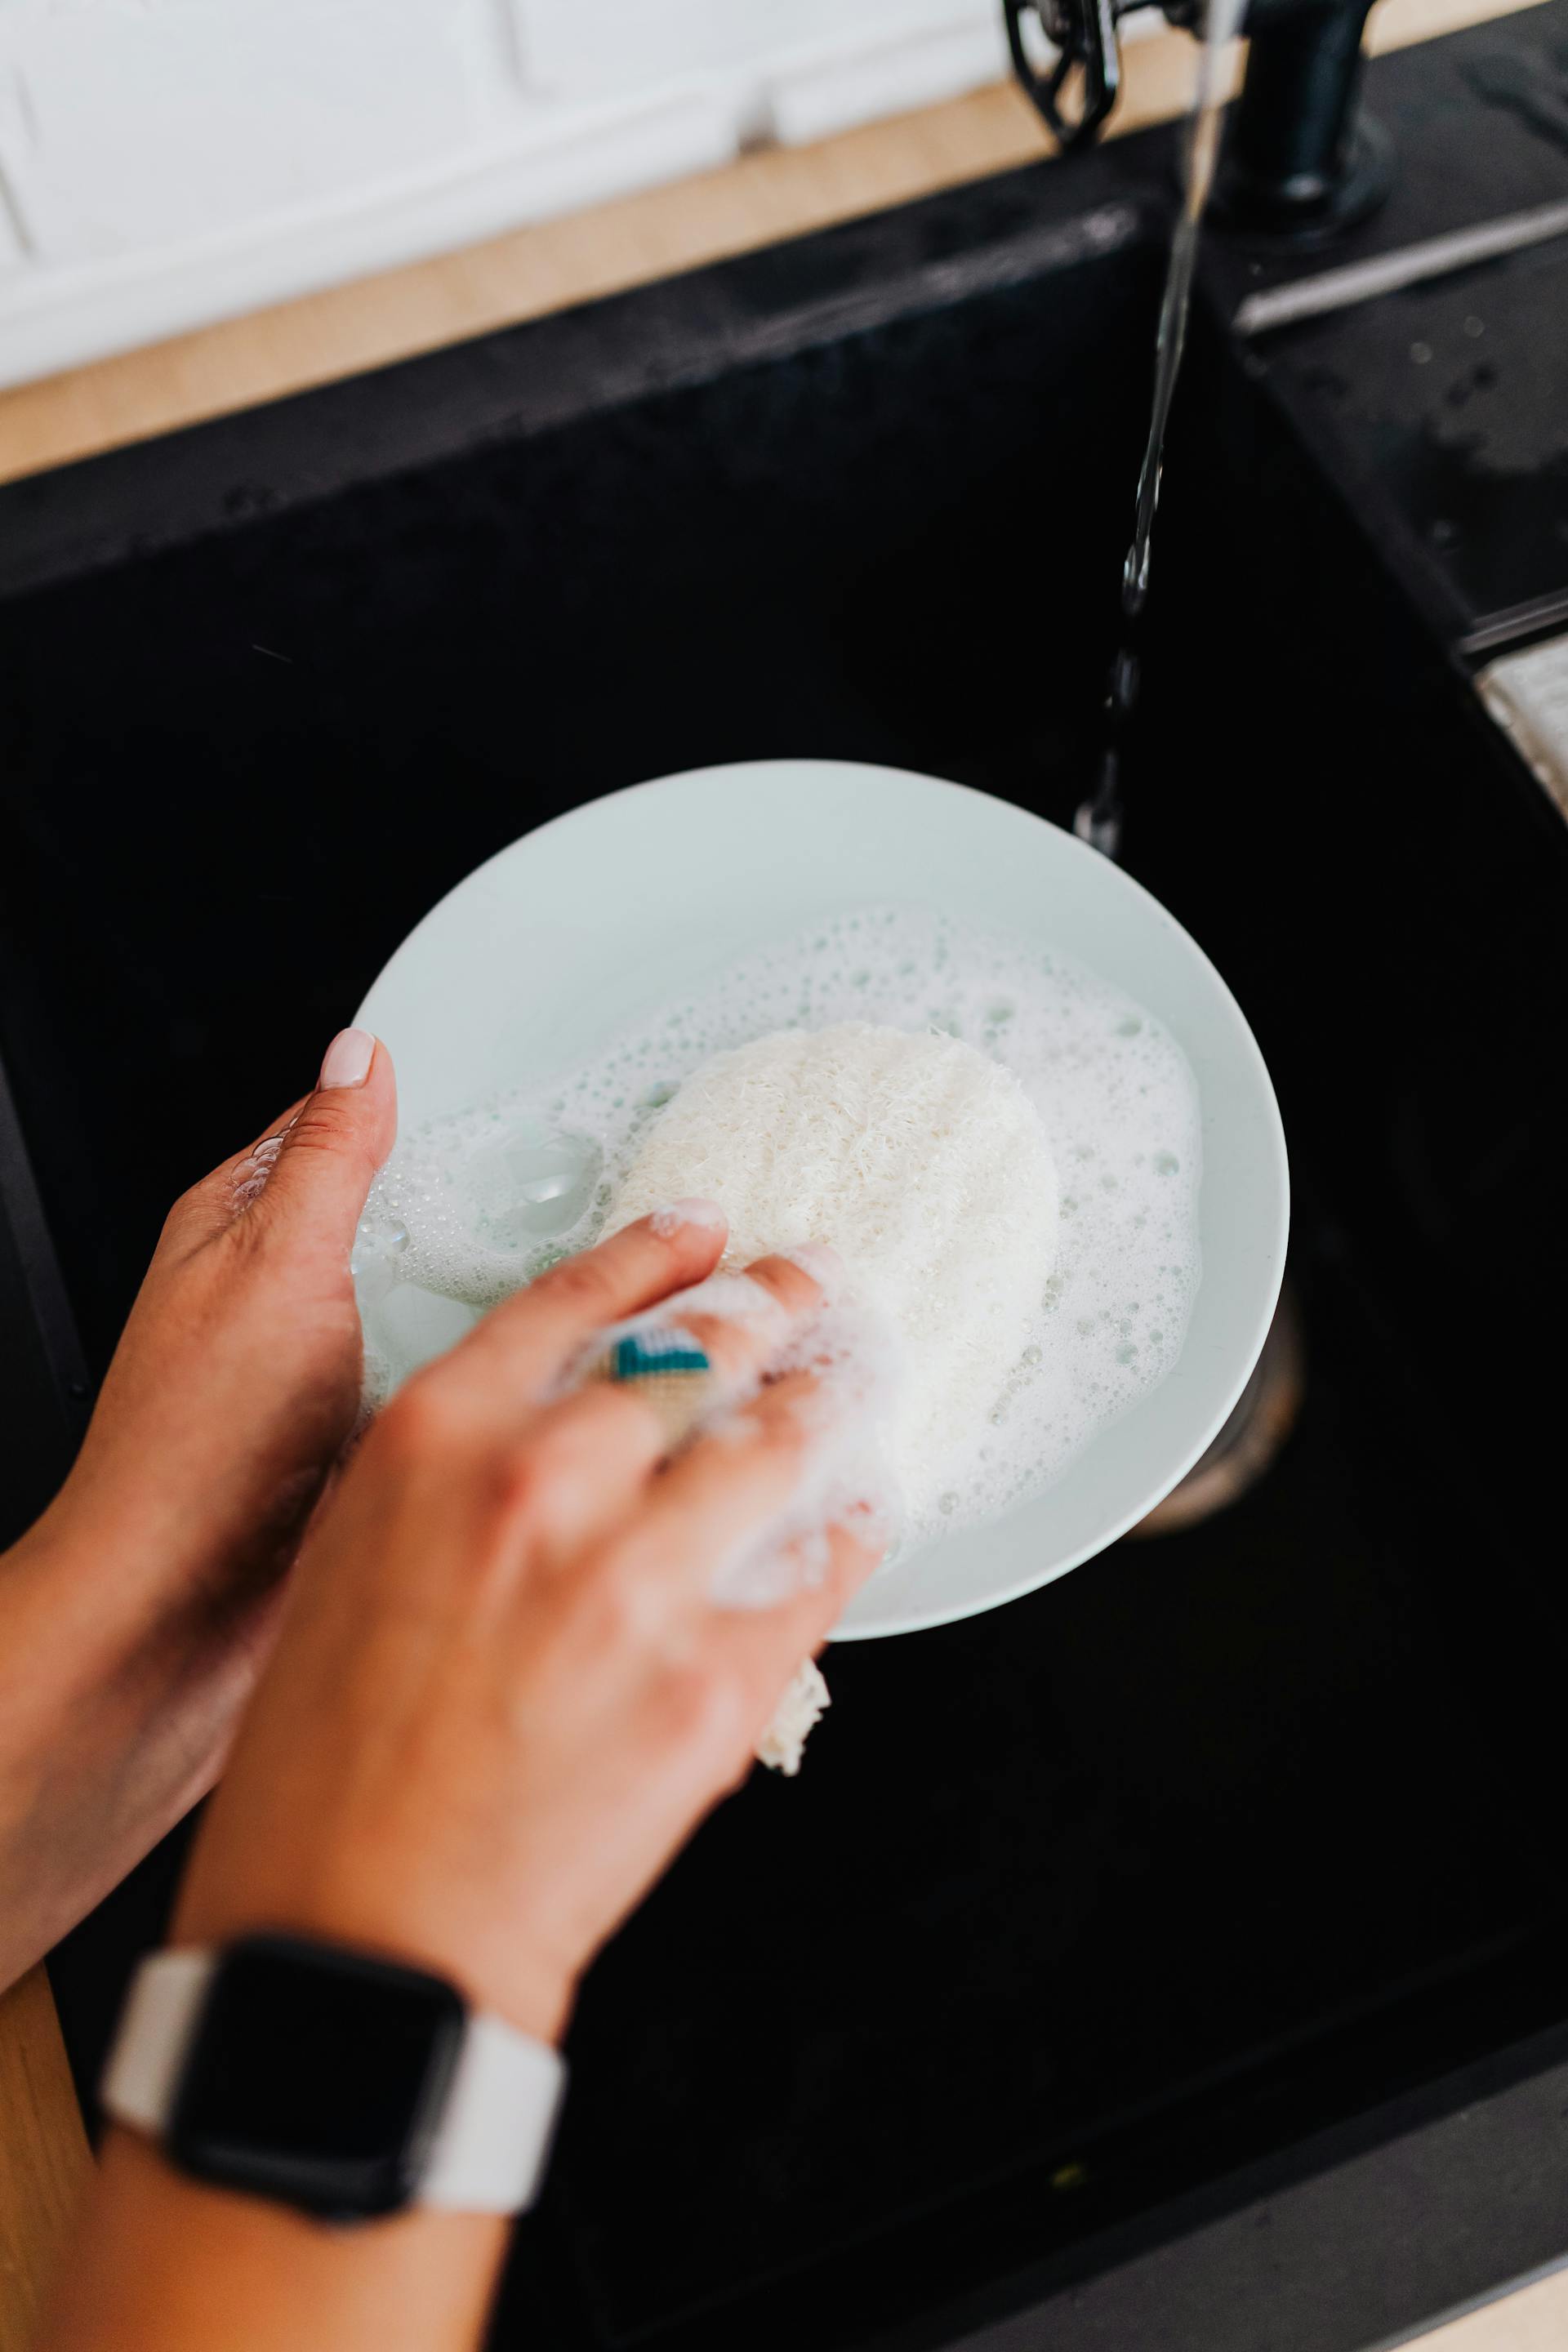 Une personne faisant la vaisselle | Source : Pexels